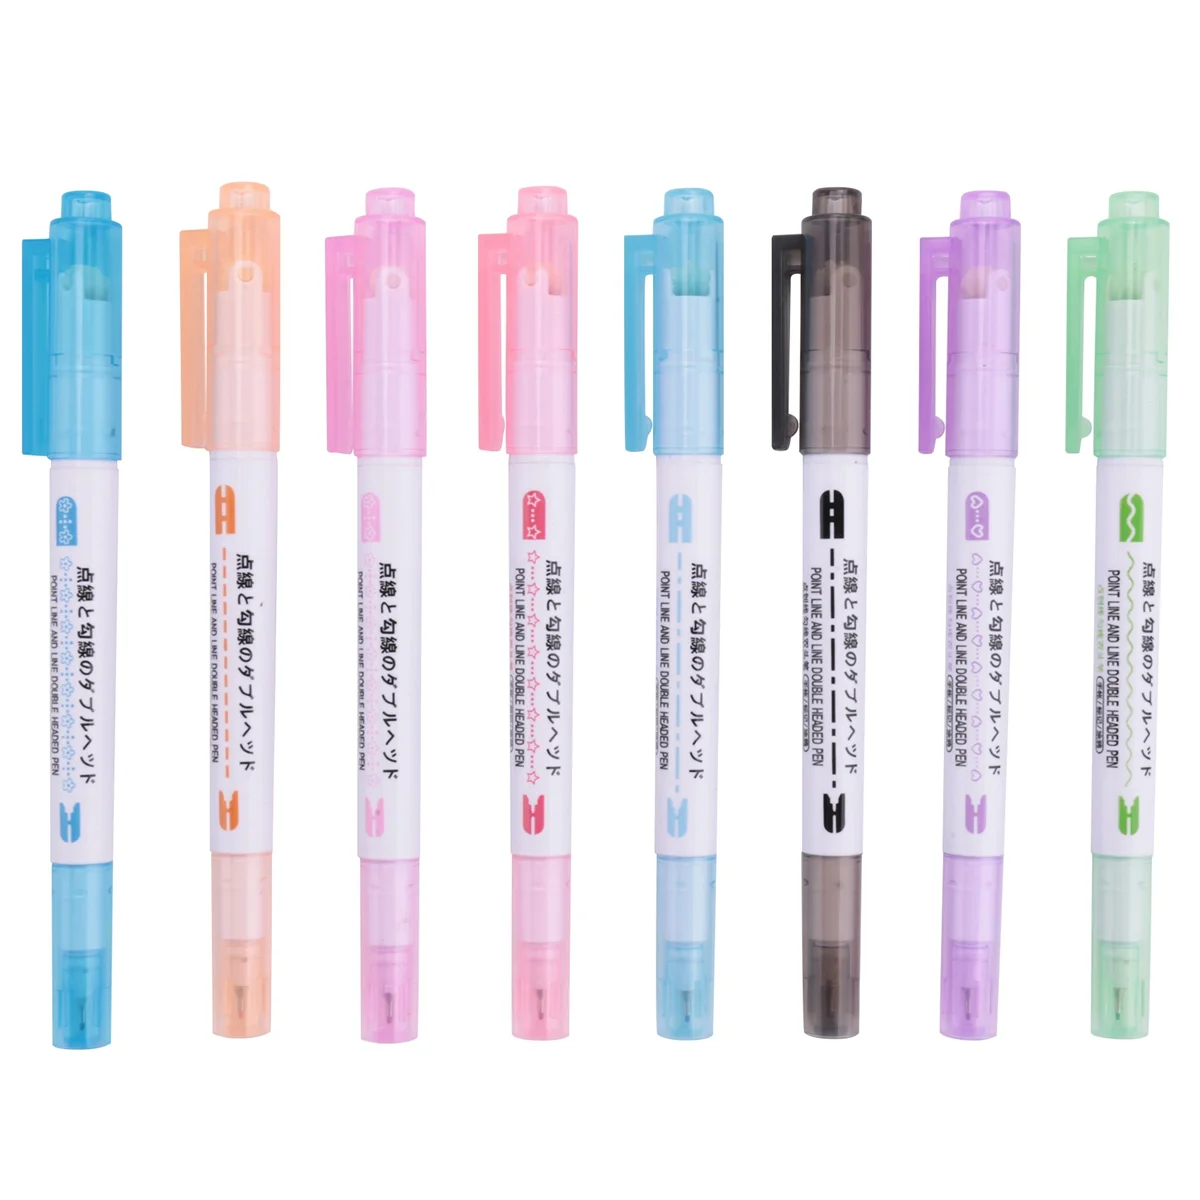 

8 Piece Curve Pen Set Dual Tip Linear Color Pens for Diary Paper Companion Gel Pens 8 Colors Shape Gel Pens